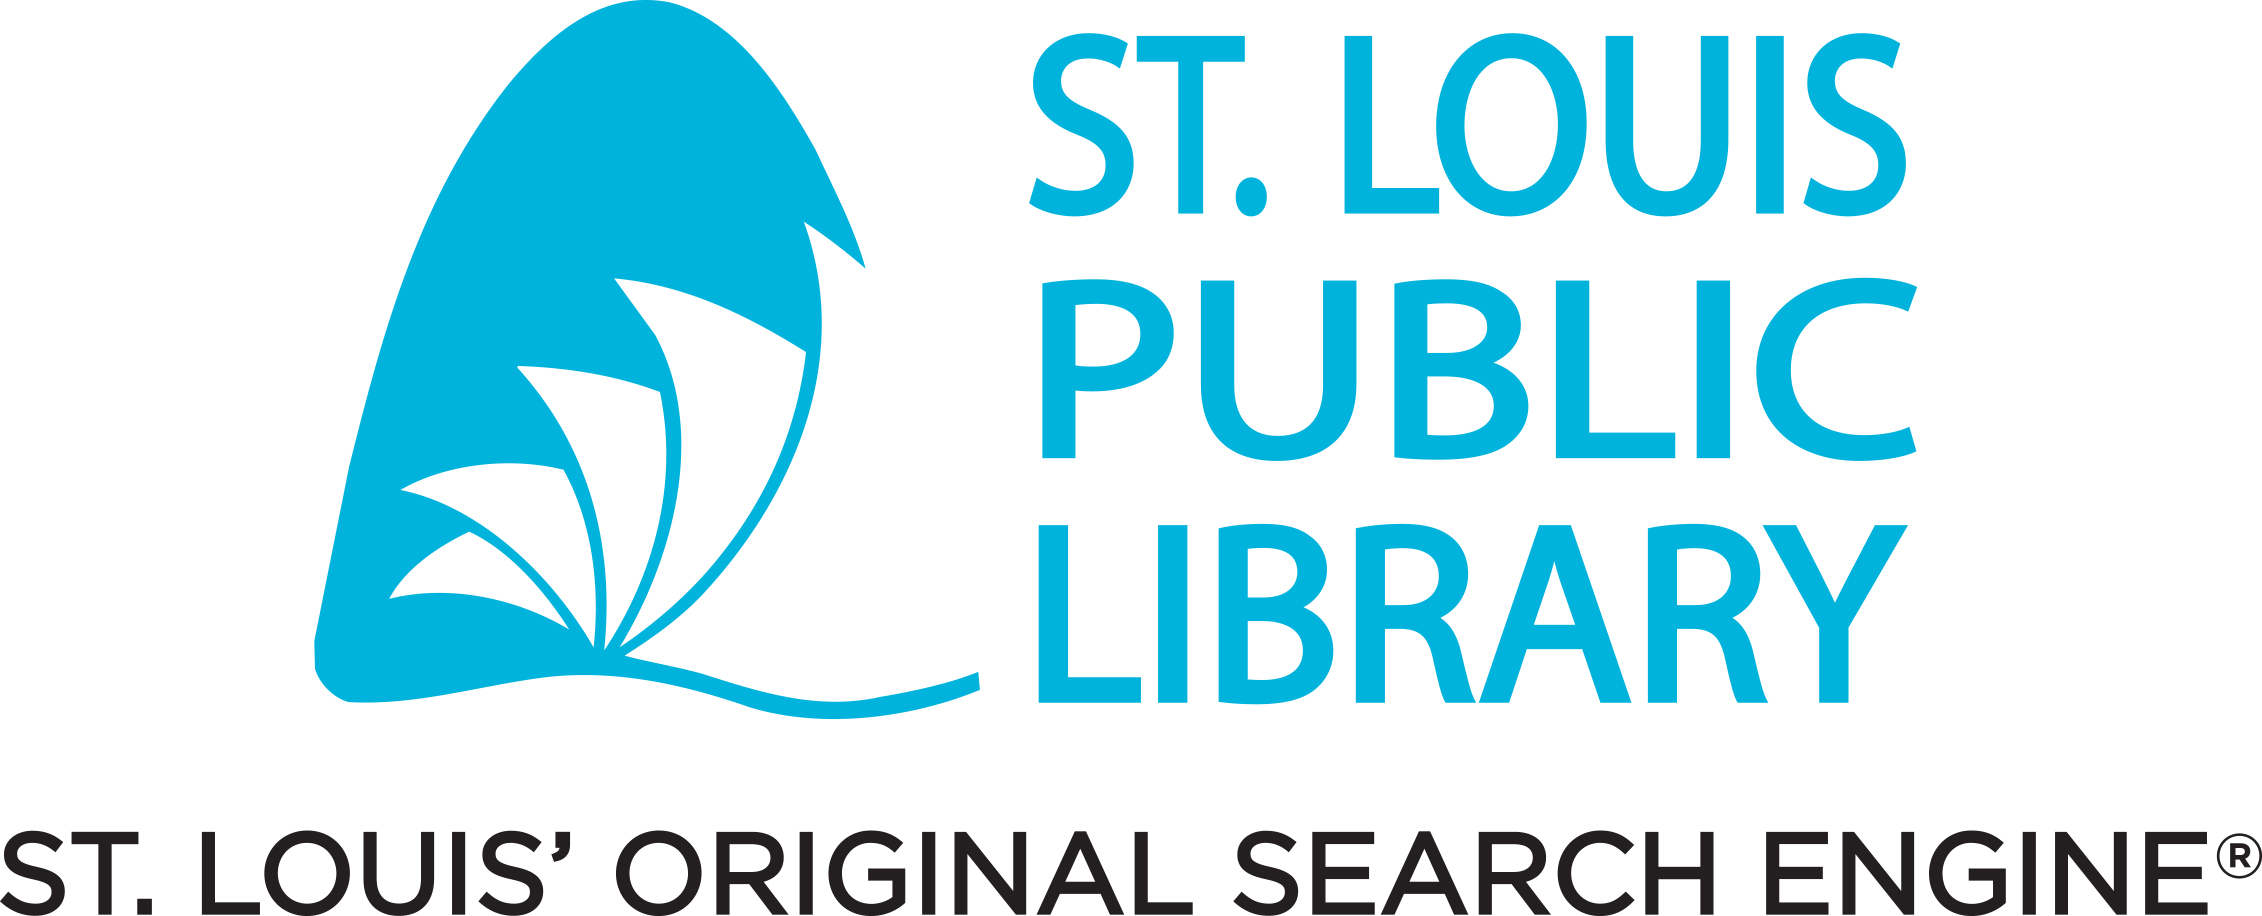 St. Louis Public Library logo